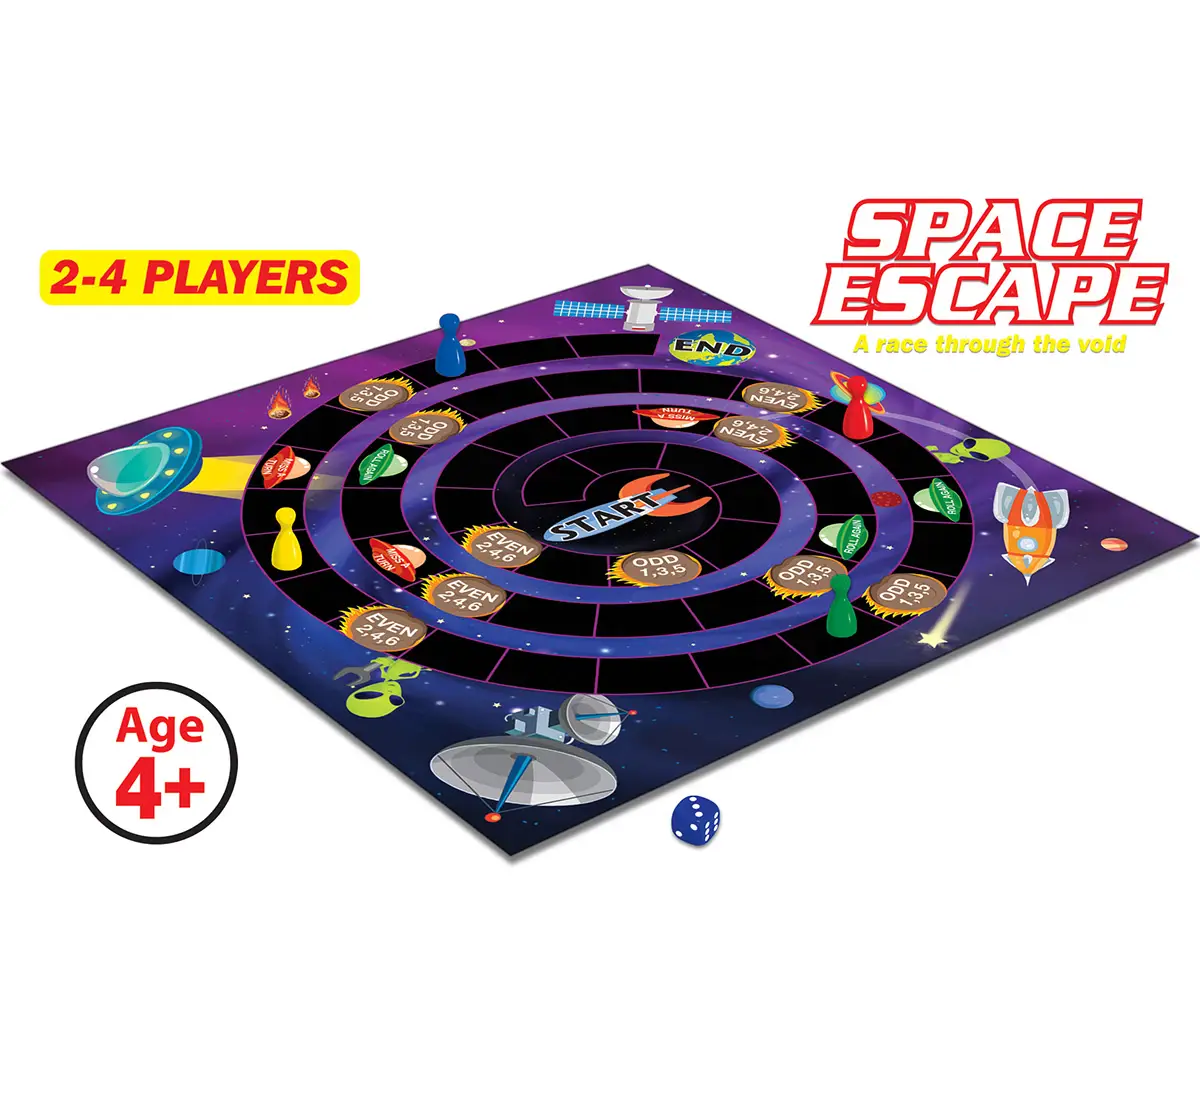 Frank Space Escape Board Game, 4Y+